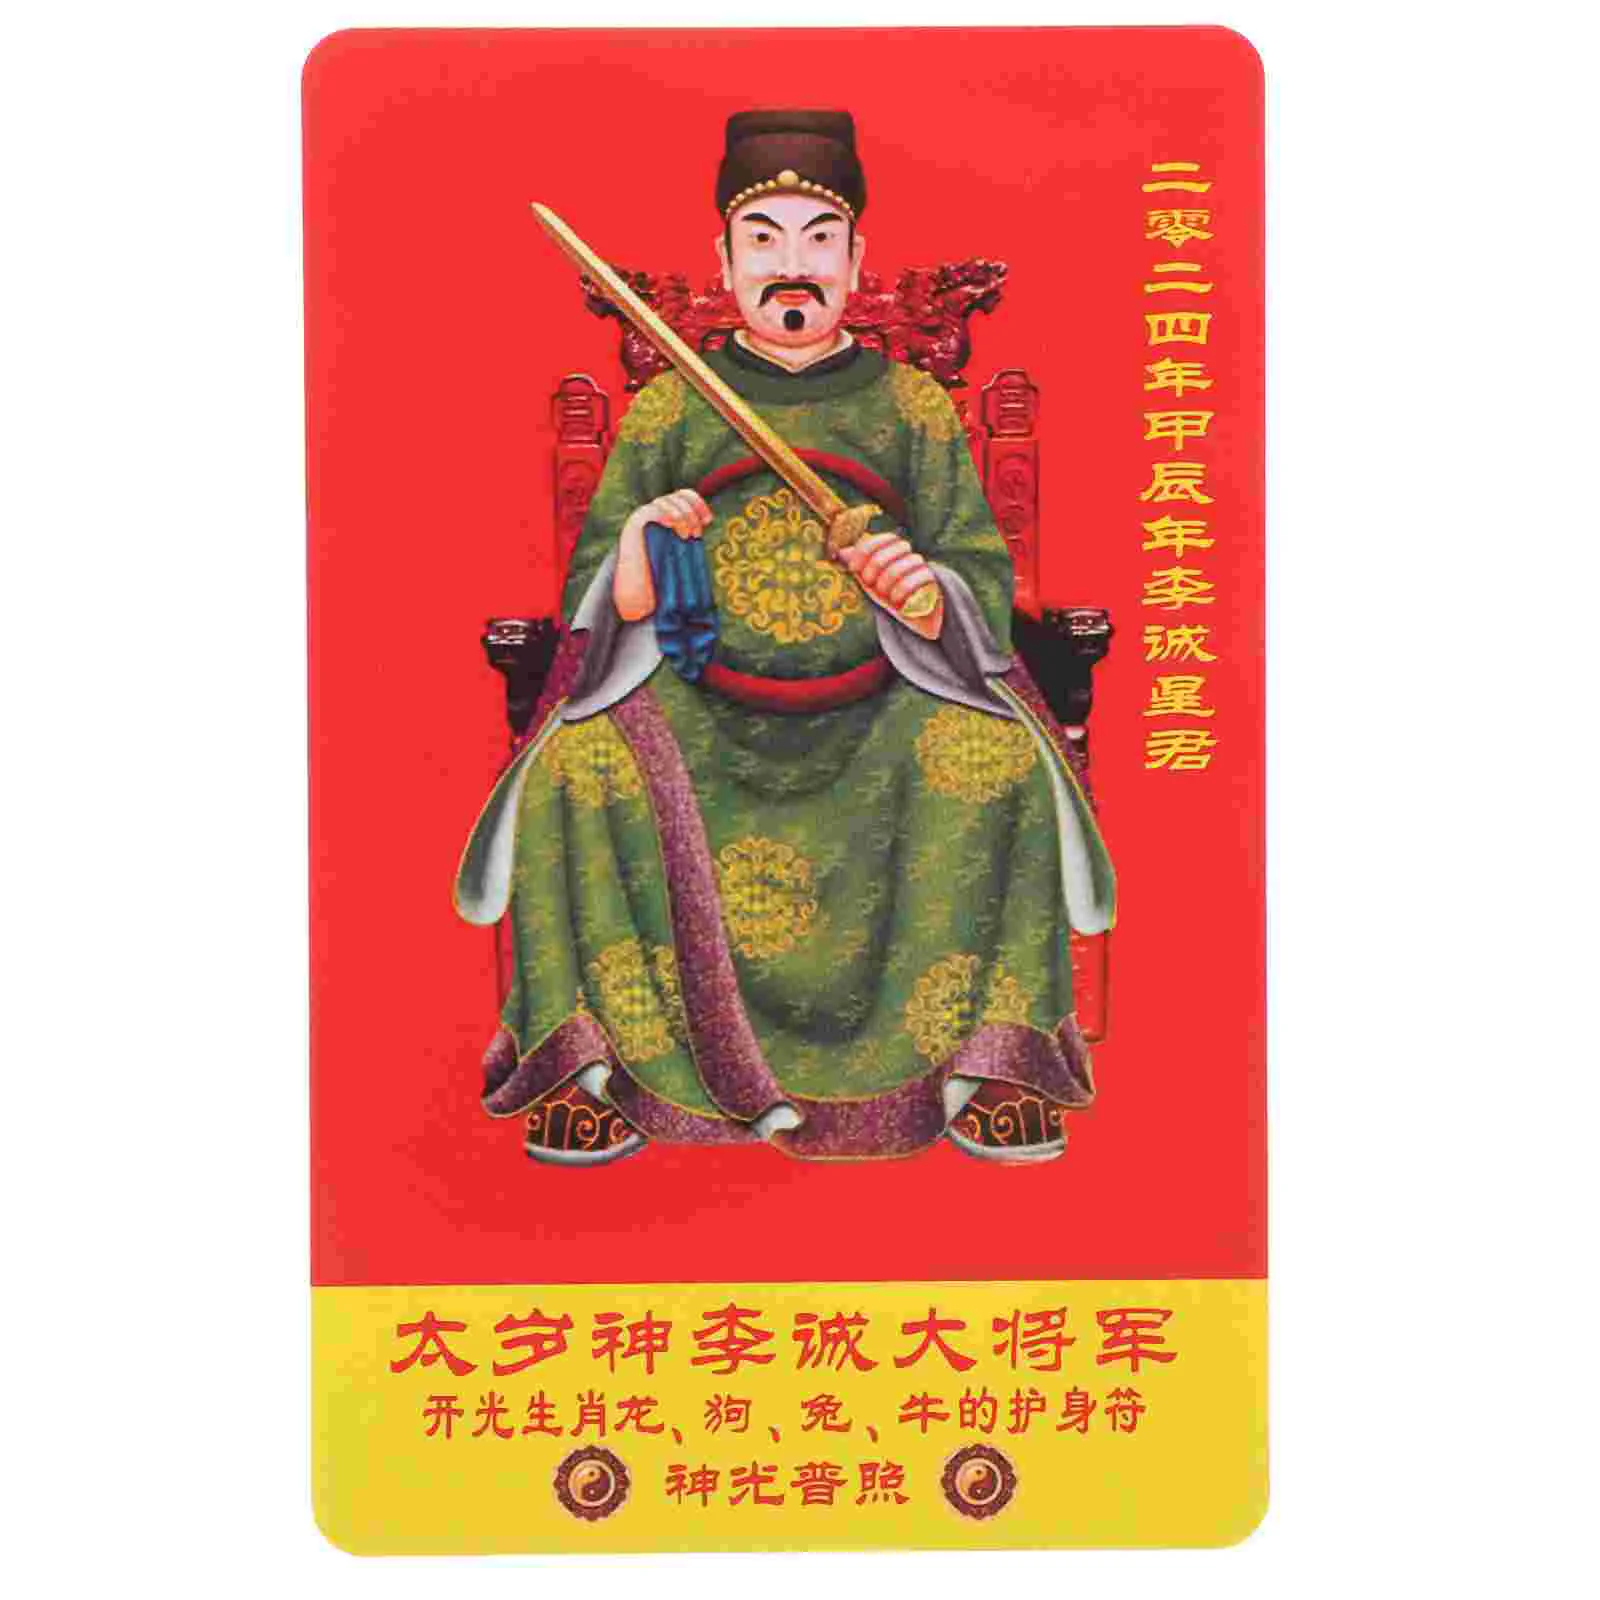 

Амулет в китайском стиле, карточка общего назначения Taisui, карточка для защиты удачи и благоприятного успеха, рождественские украшения